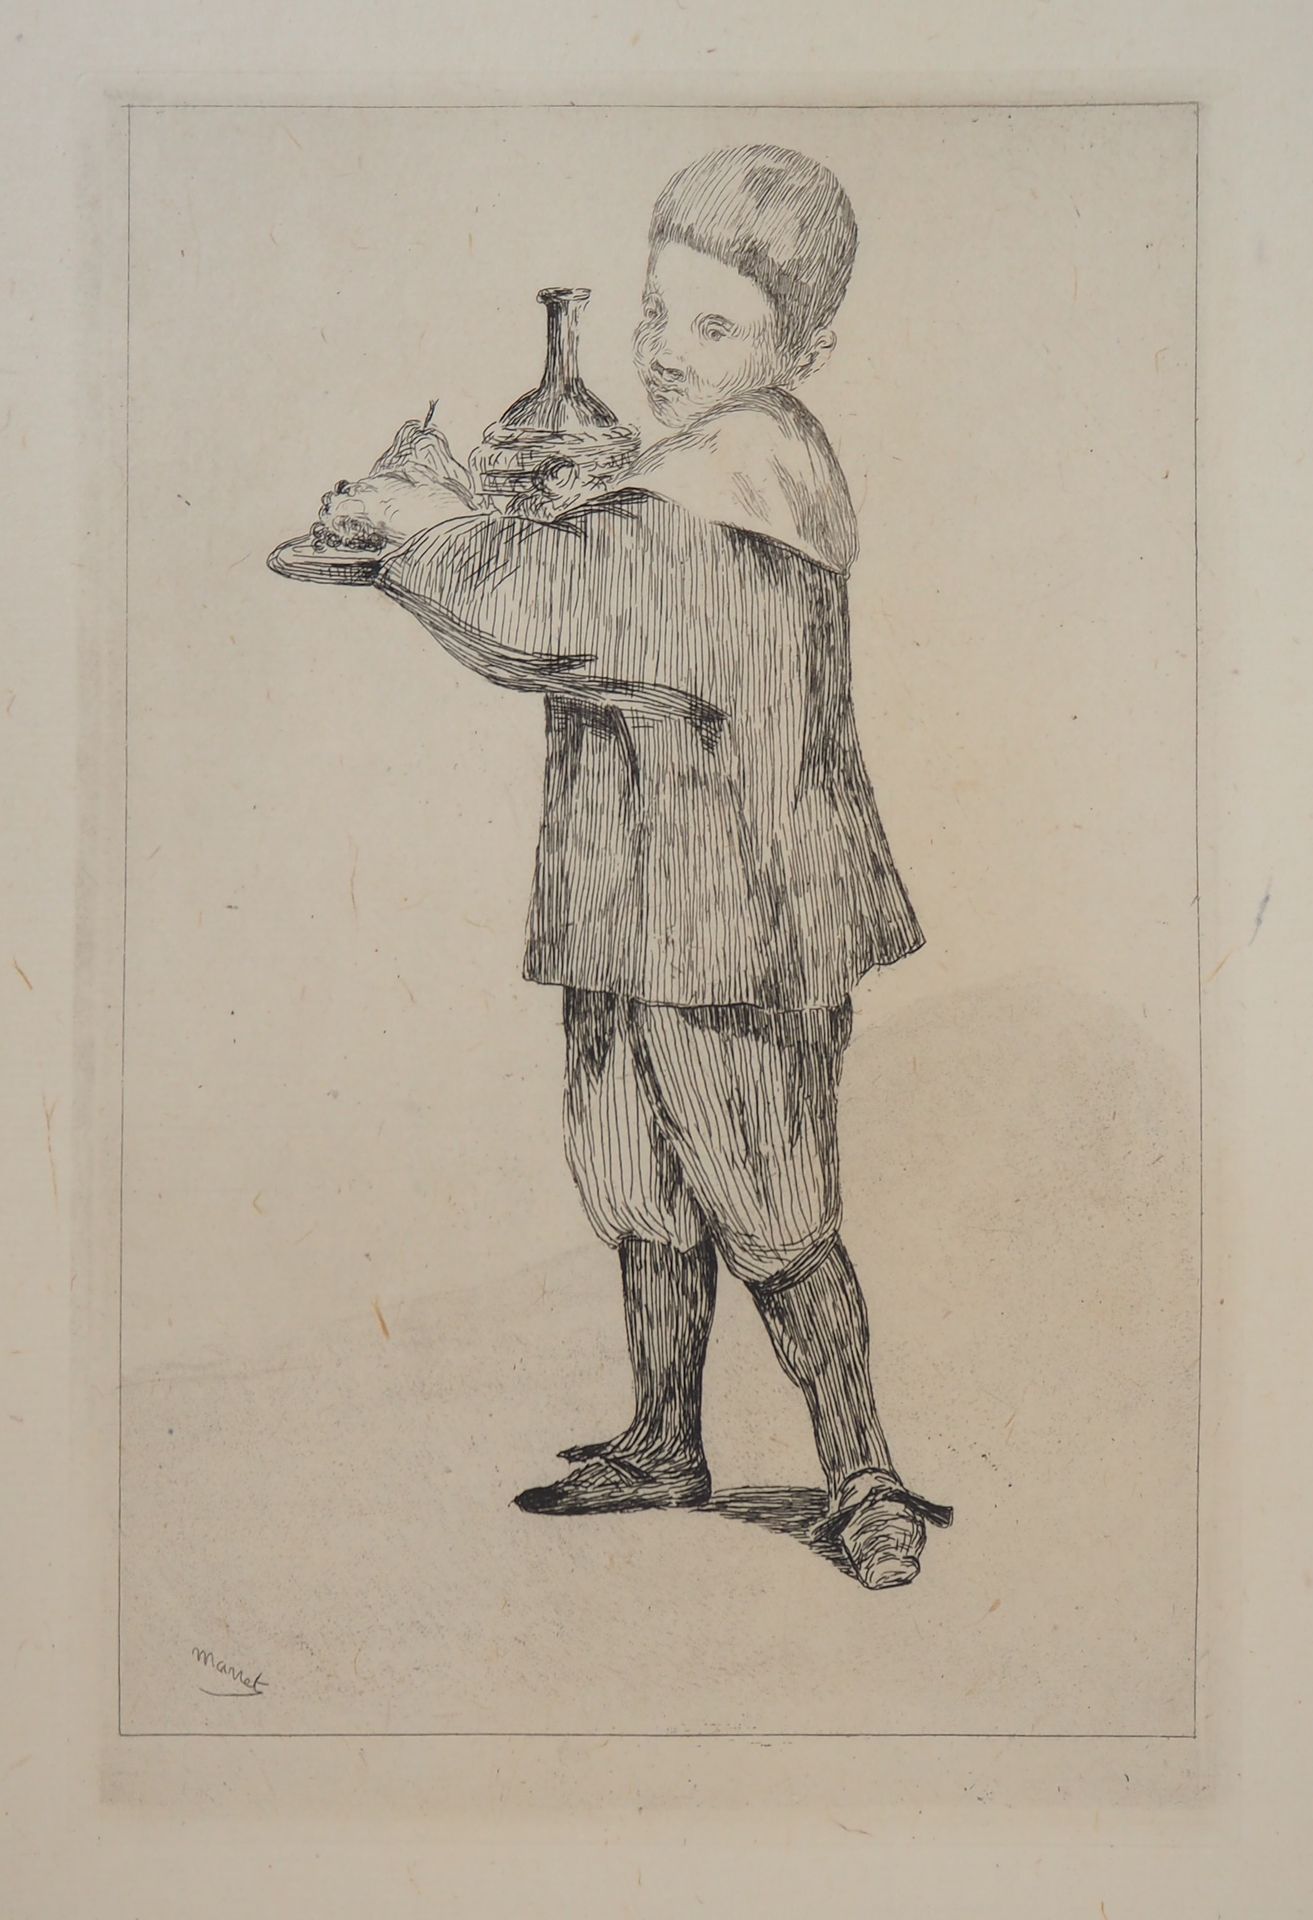 Edouard MANET Edouard MANET

Niño llevando una bandeja, 1861

Grabado original (&hellip;